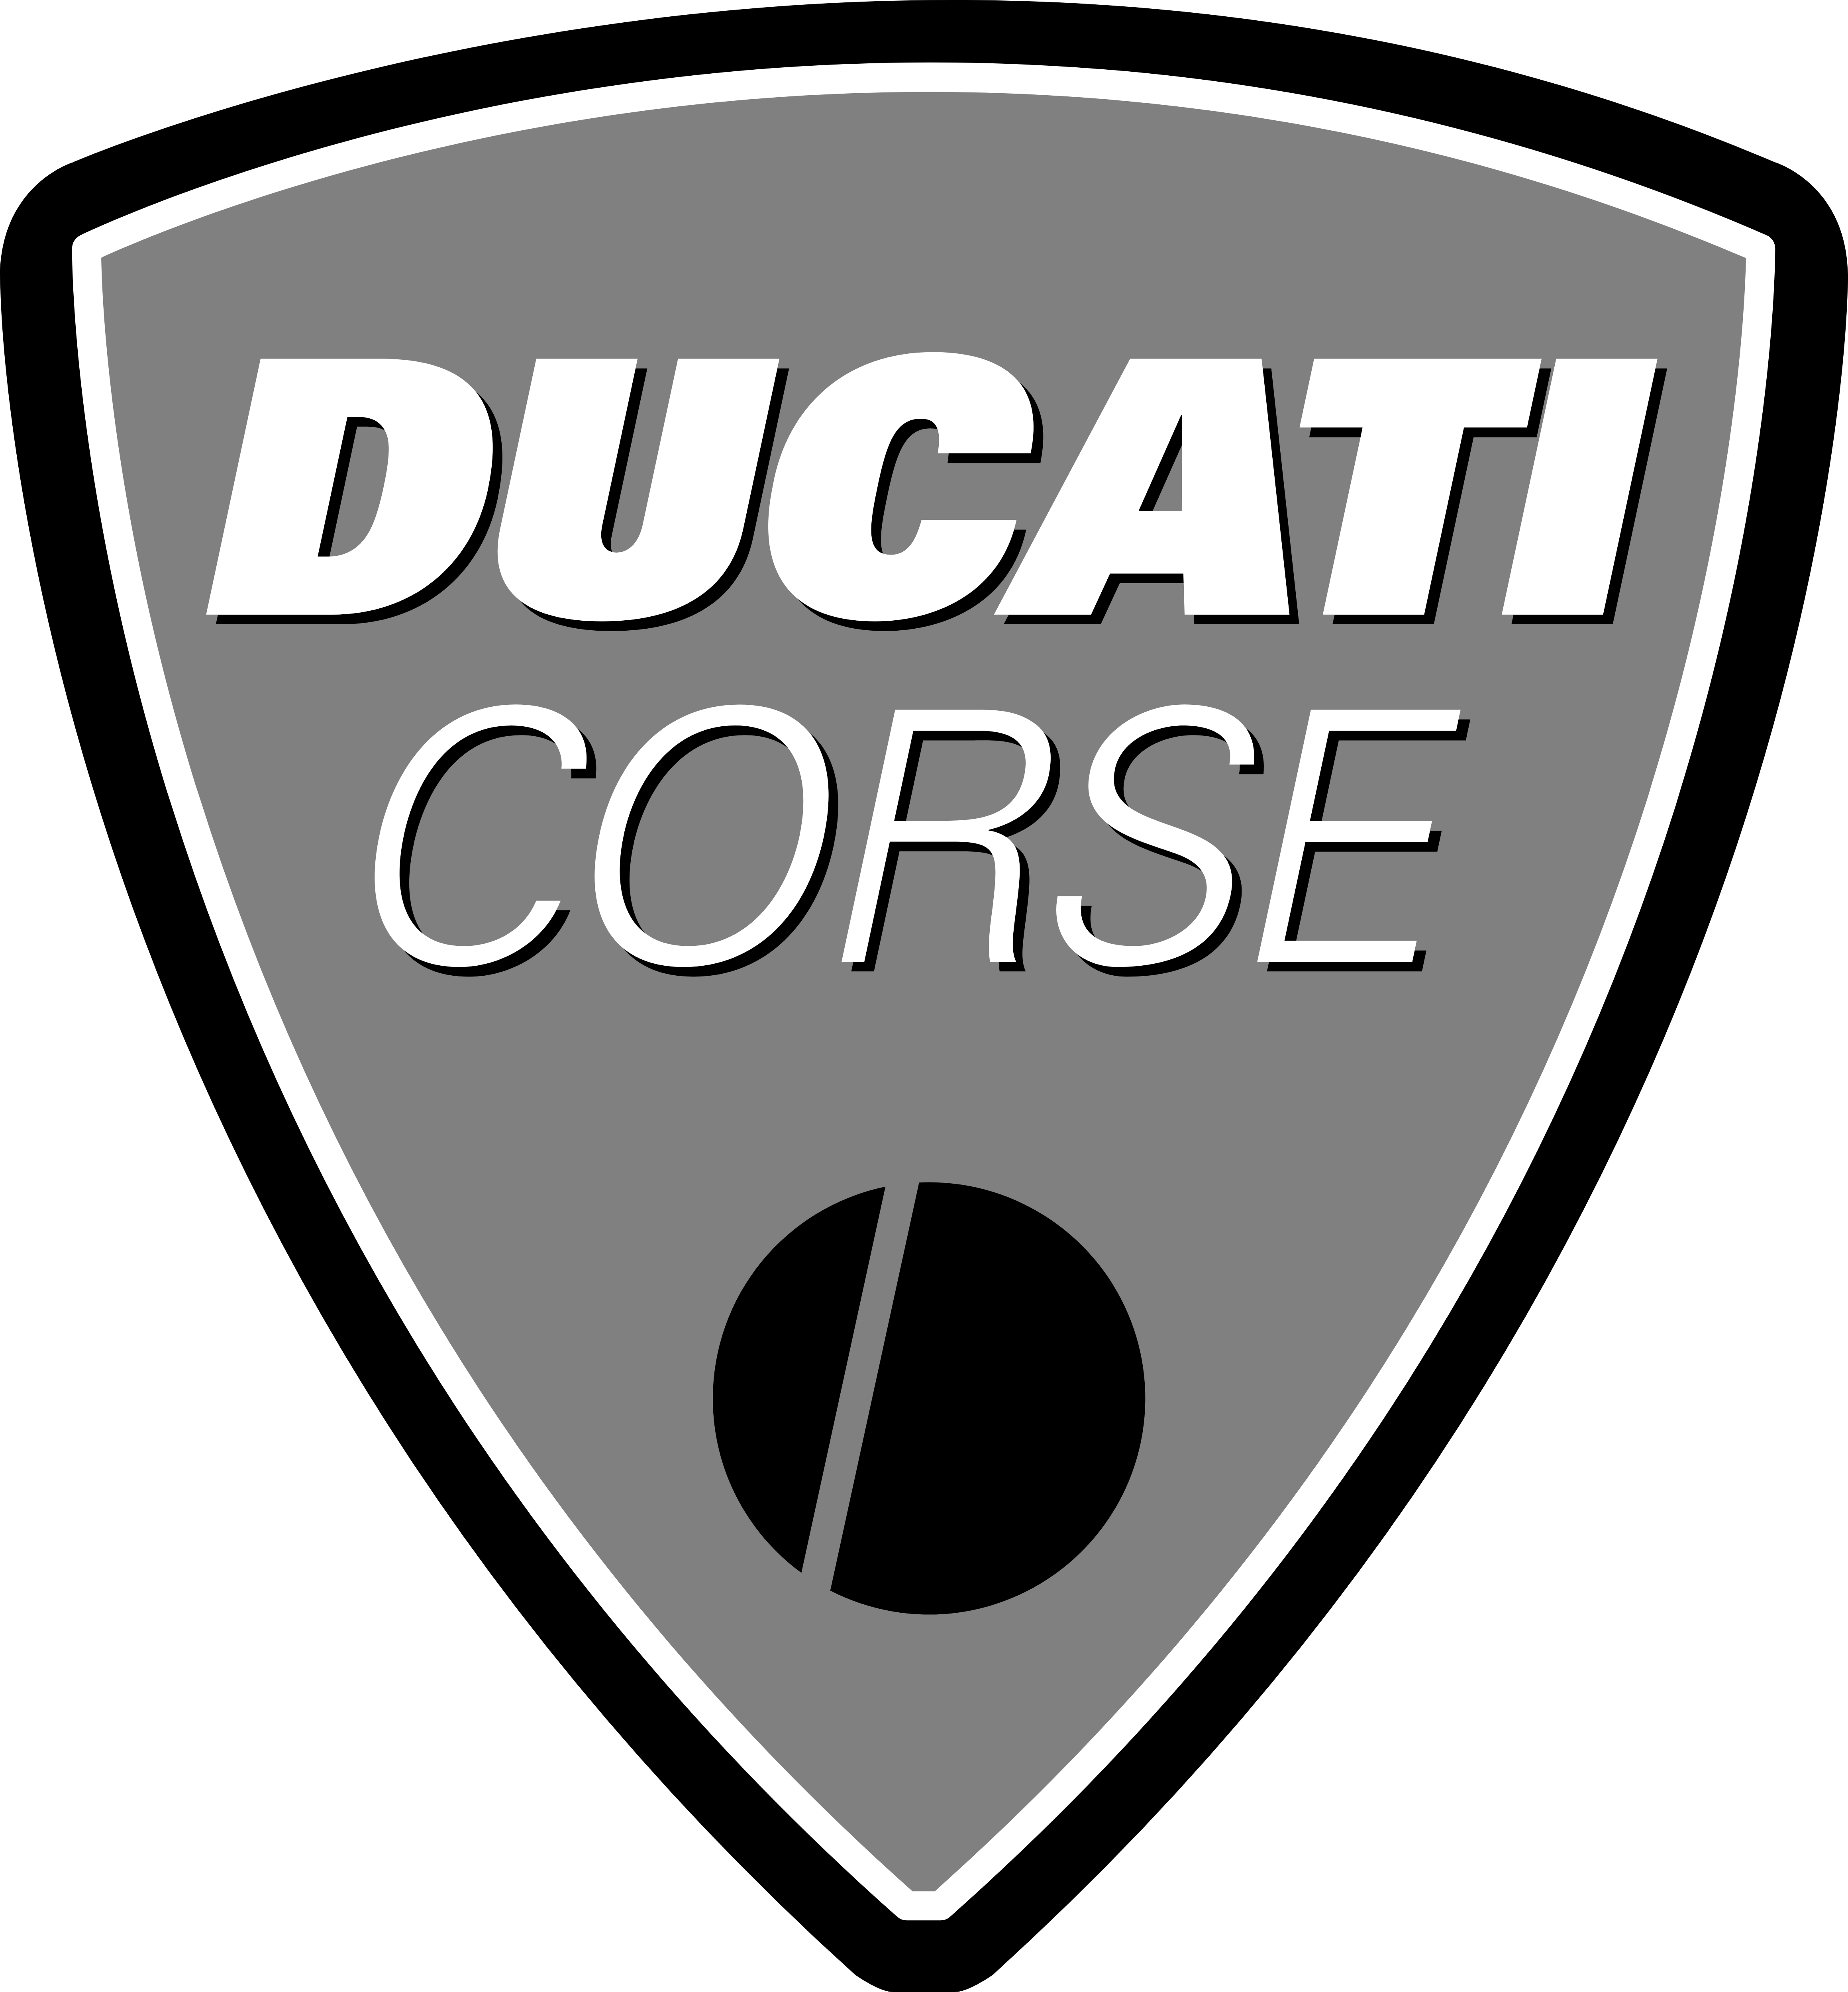 Ducati logo PNG image